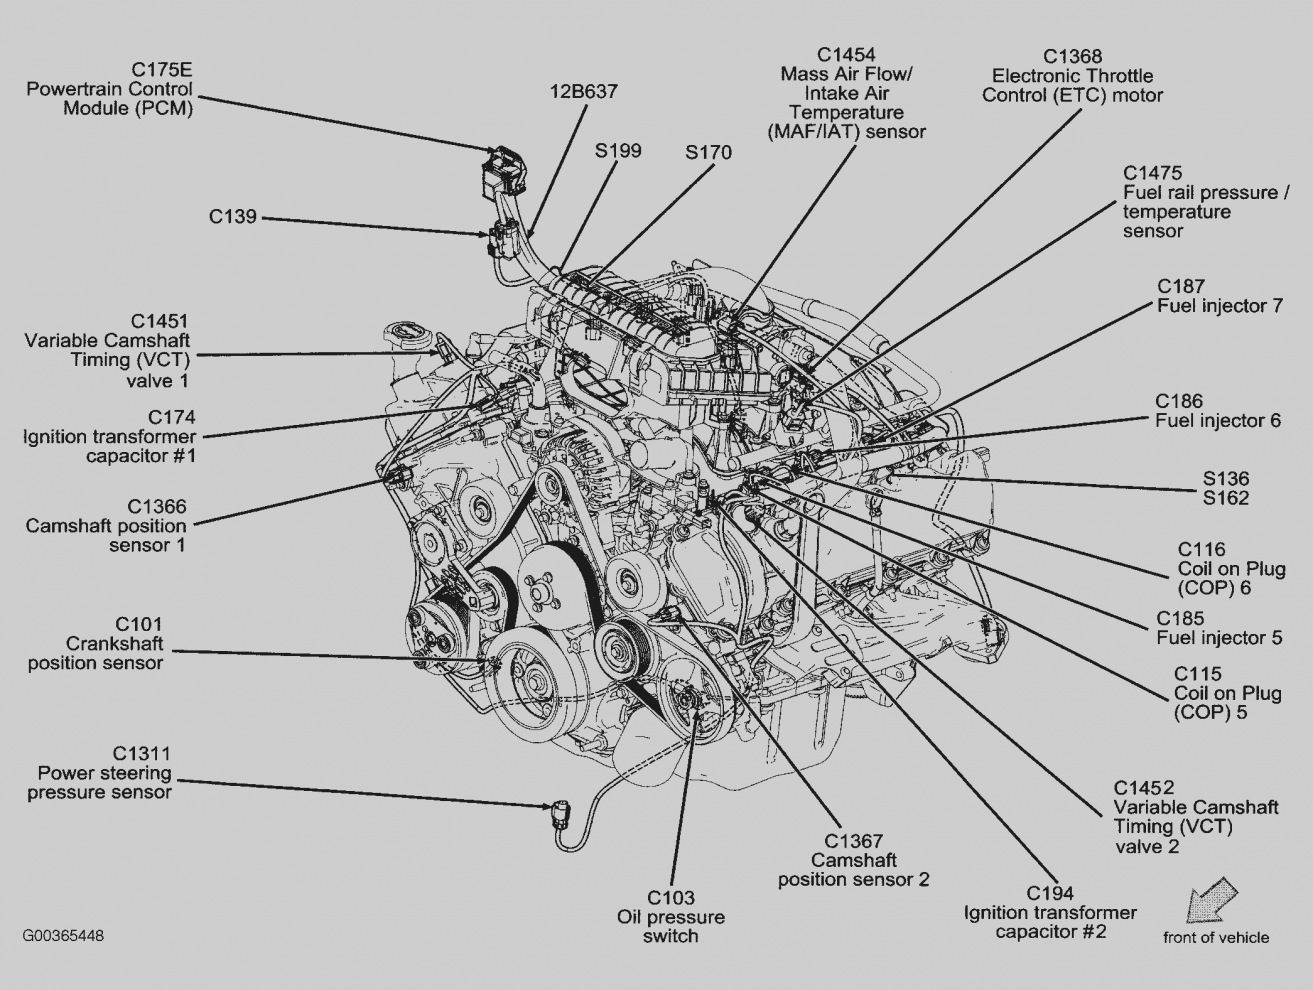 Ford 4.6 Liter Engine Diagram Image Result for 2001 ford F150 4.6l Exhaust System Diagram Of Ford 4.6 Liter Engine Diagram